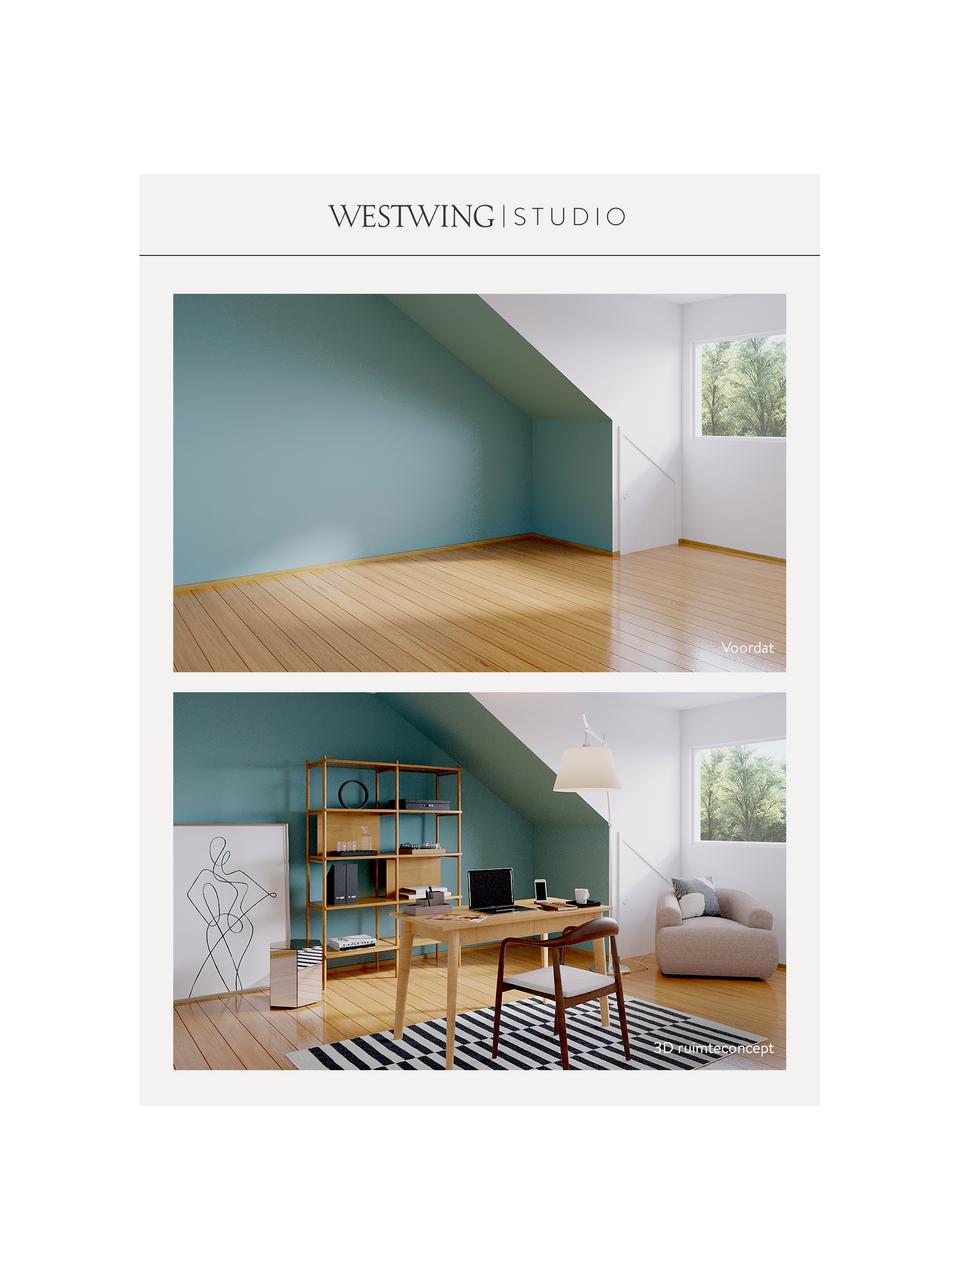 Westwing Studio | Premium advies voor uw kamer, Digitale voucher.
Na ontvangst van je bestelling nemen wij onmiddellijk contact met je op om een afspraak te maken voor een telefonisch consult met jouw persoonlijke interieurexpert., Wit, Woonruimte(s)